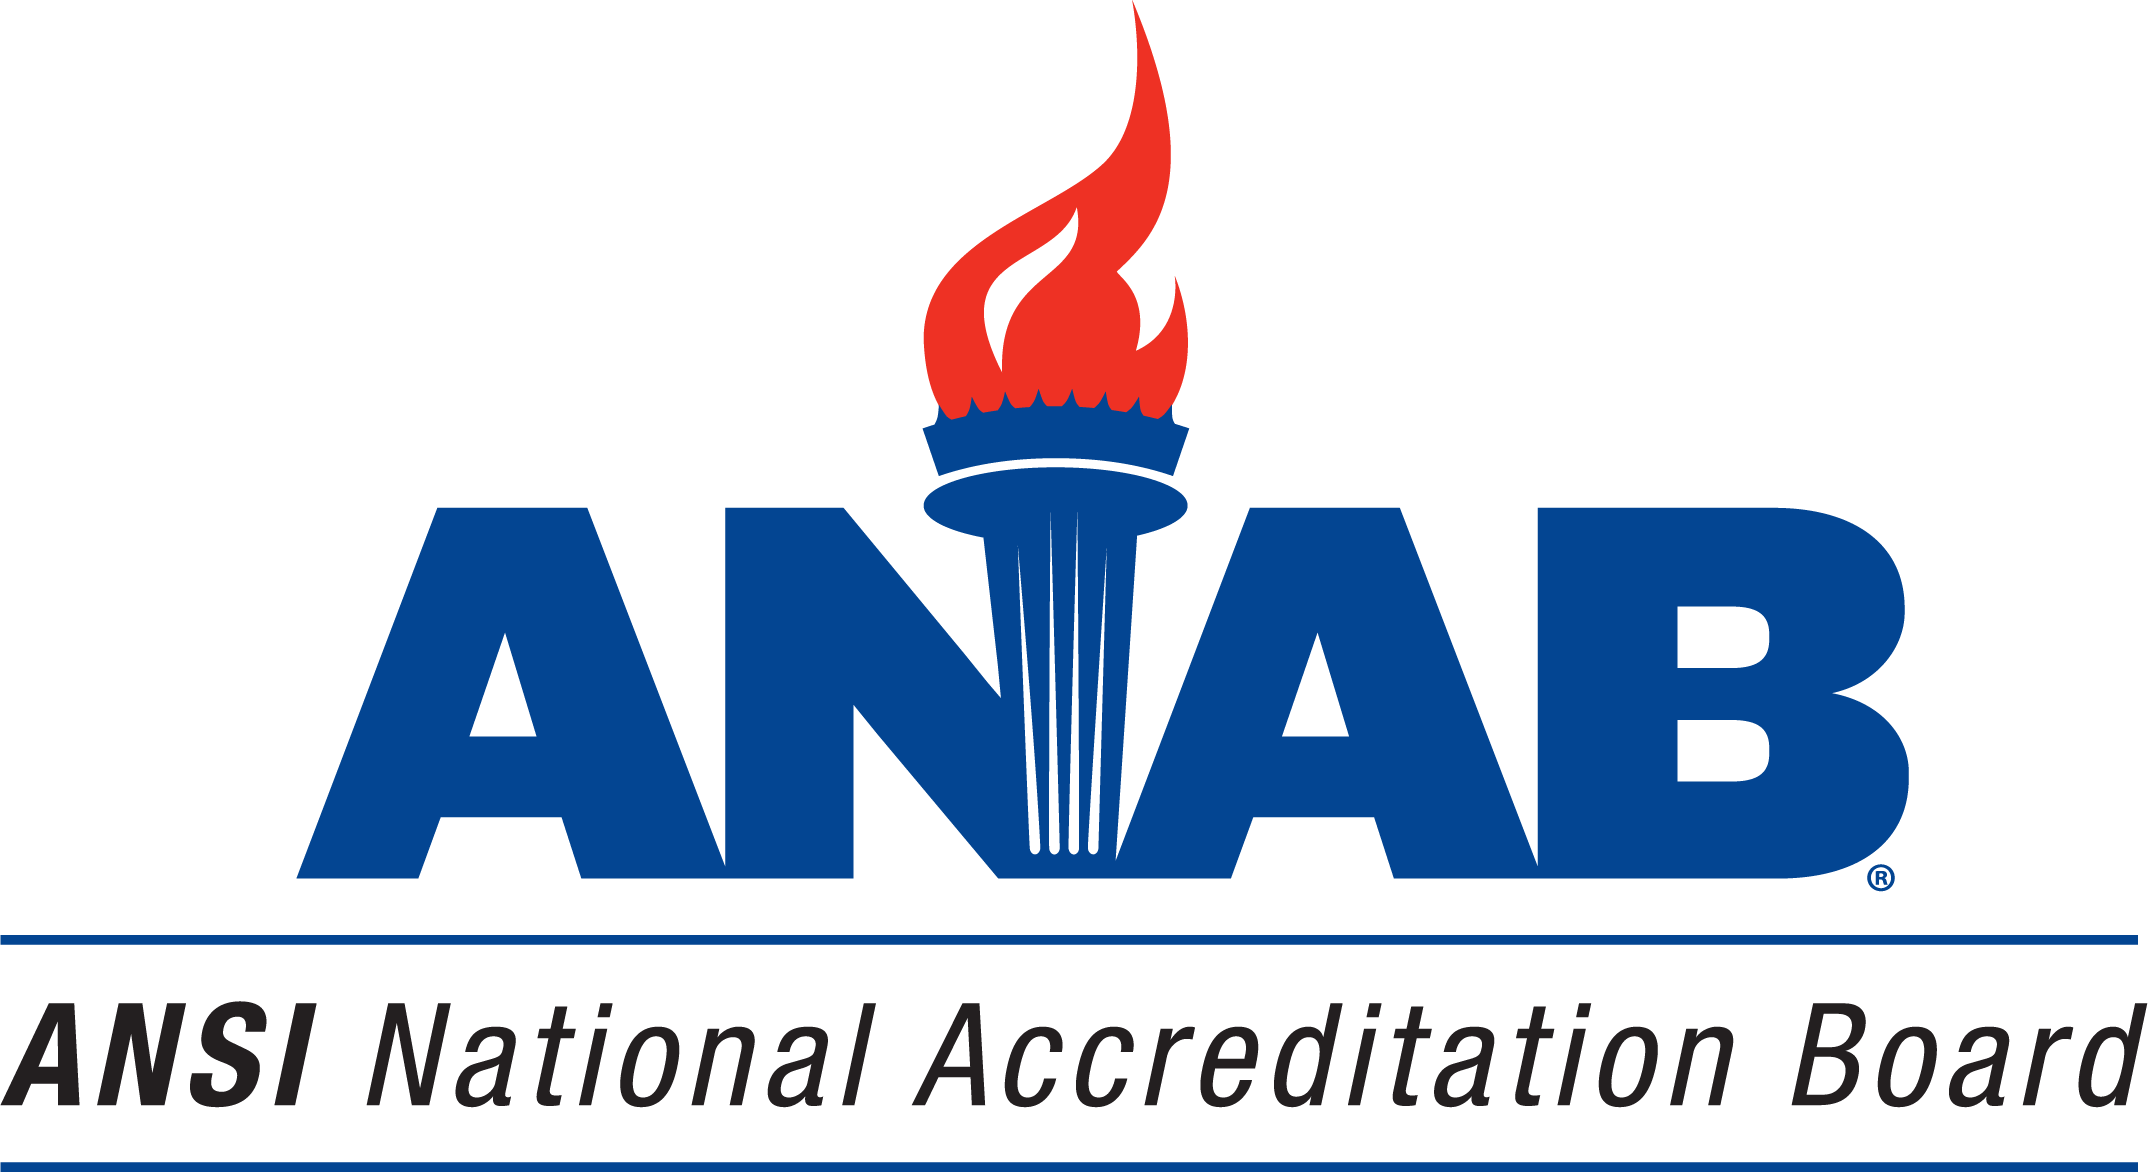 Estados Unidos de América - ANSI National Accreditation Board (ANAB)